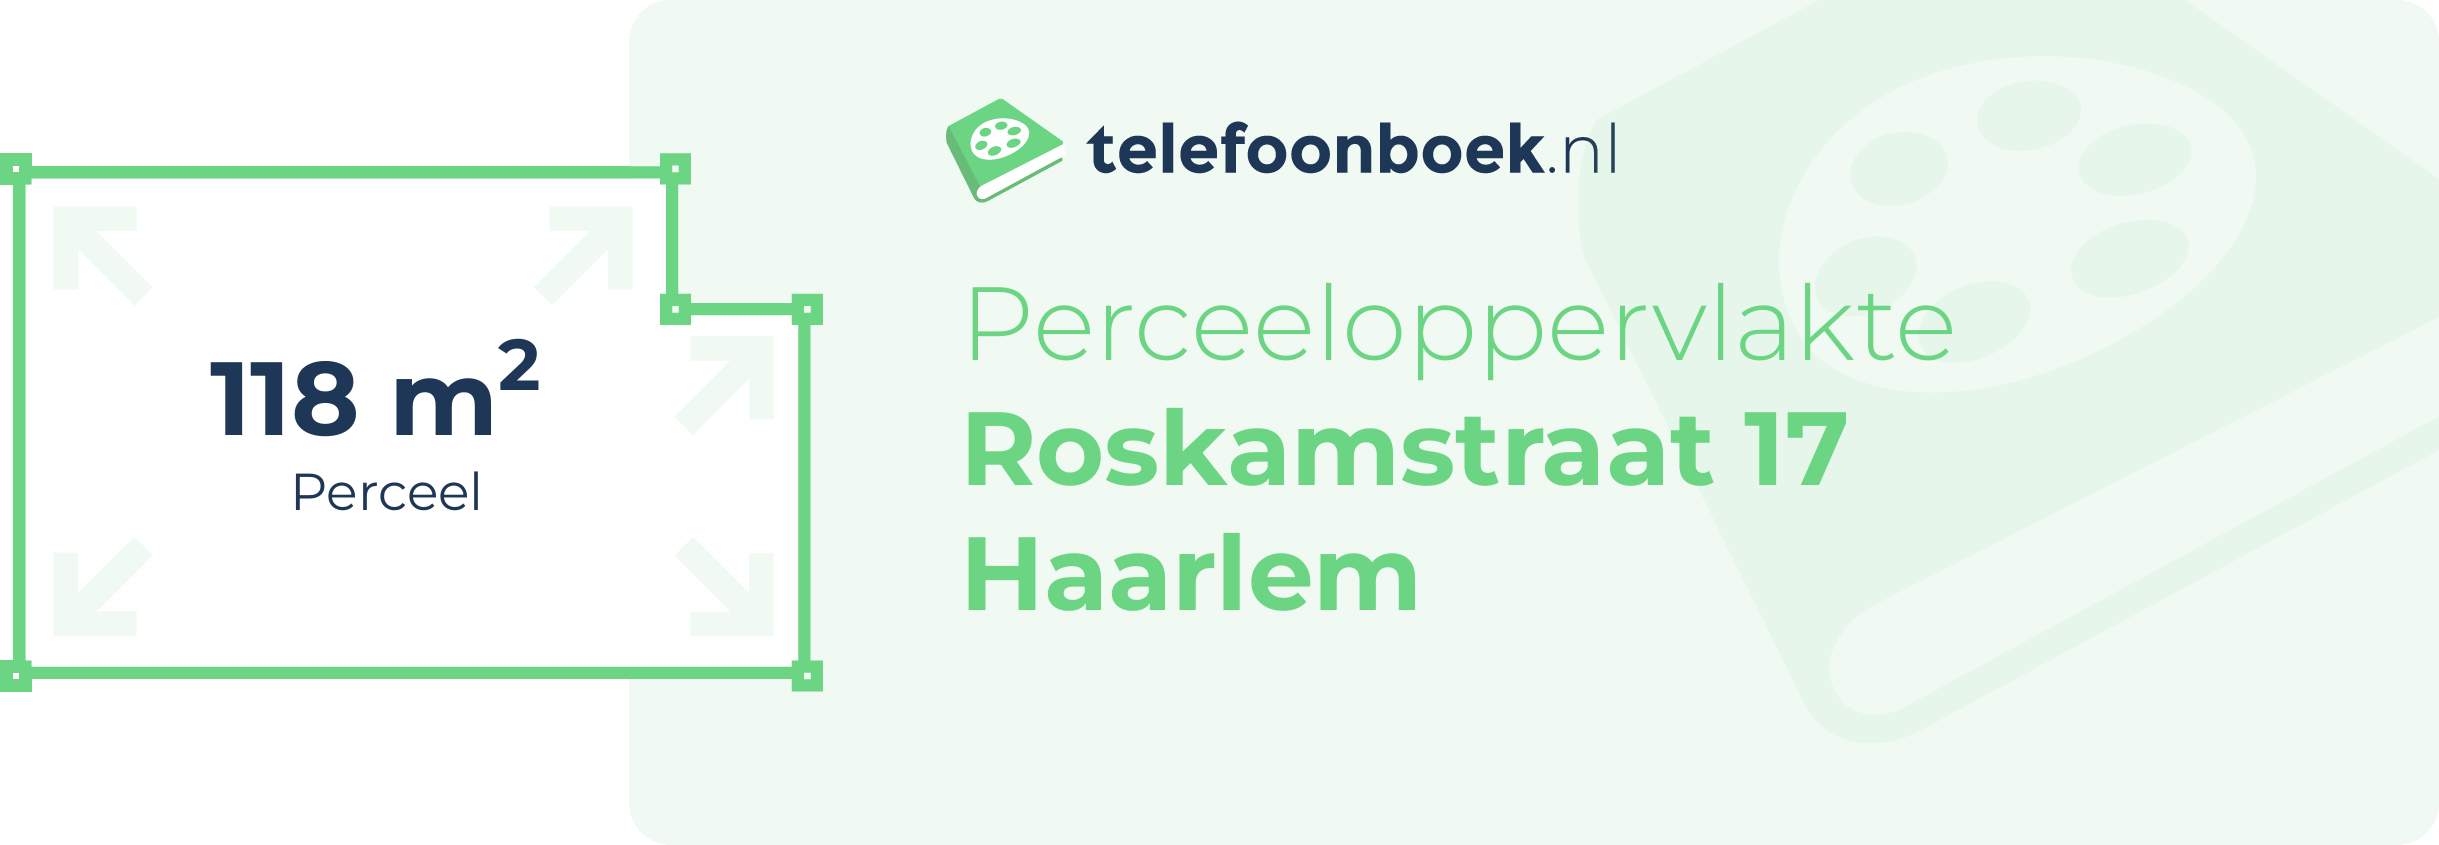 Perceeloppervlakte Roskamstraat 17 Haarlem